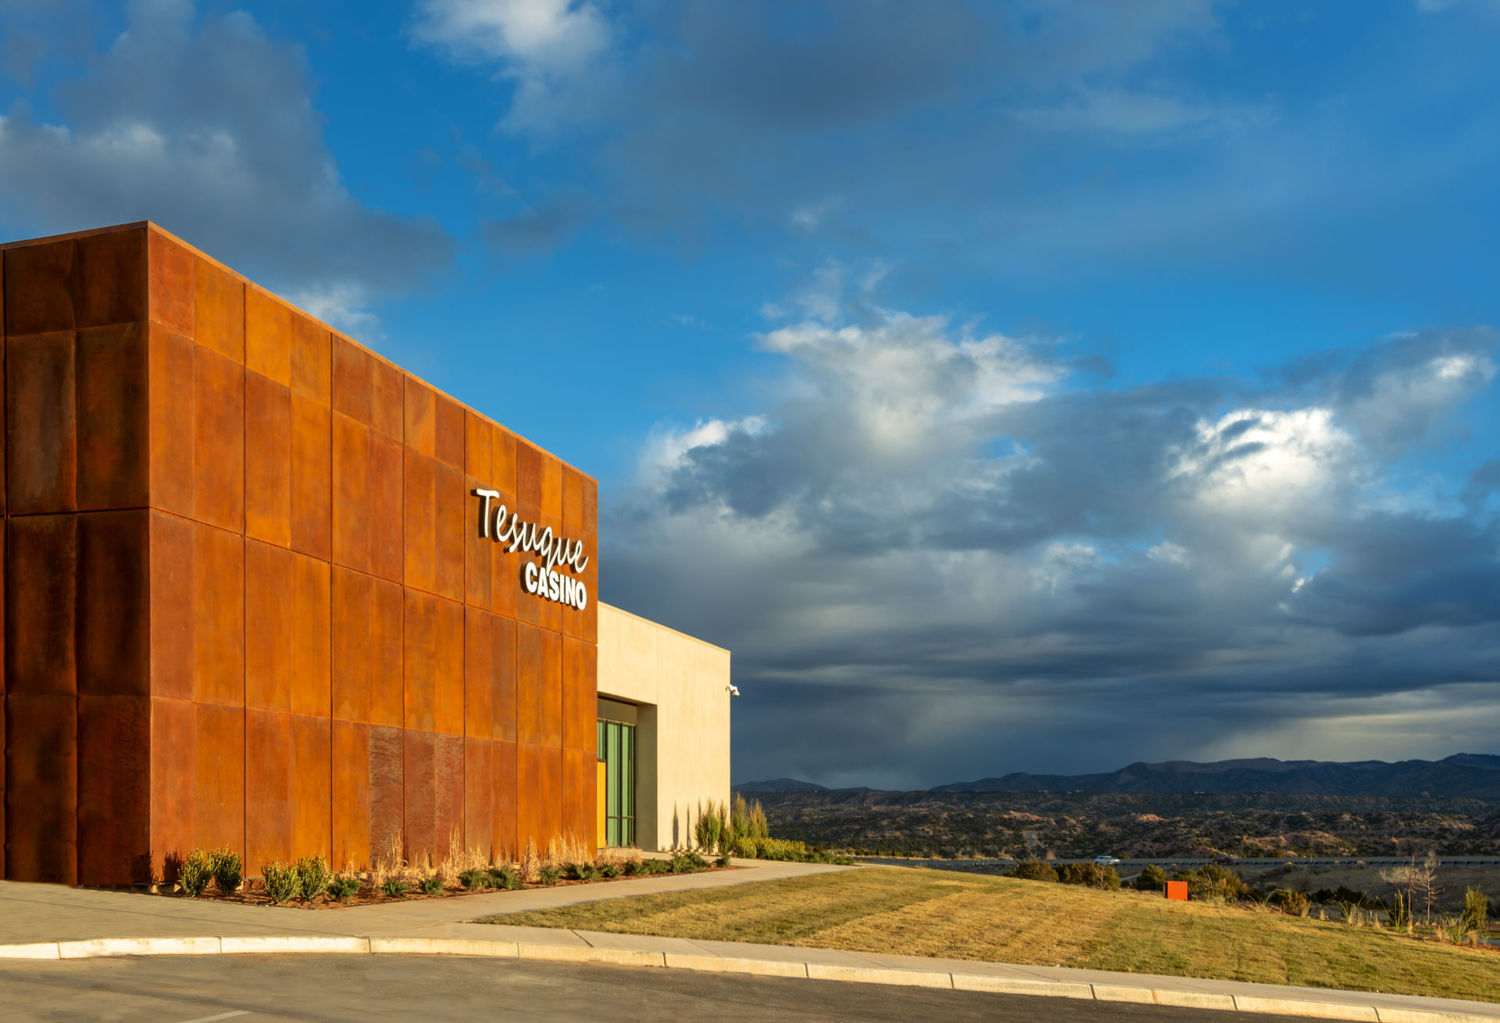 Tesuque Casino, Santa Fe, NM Jobs | Hospitality Online